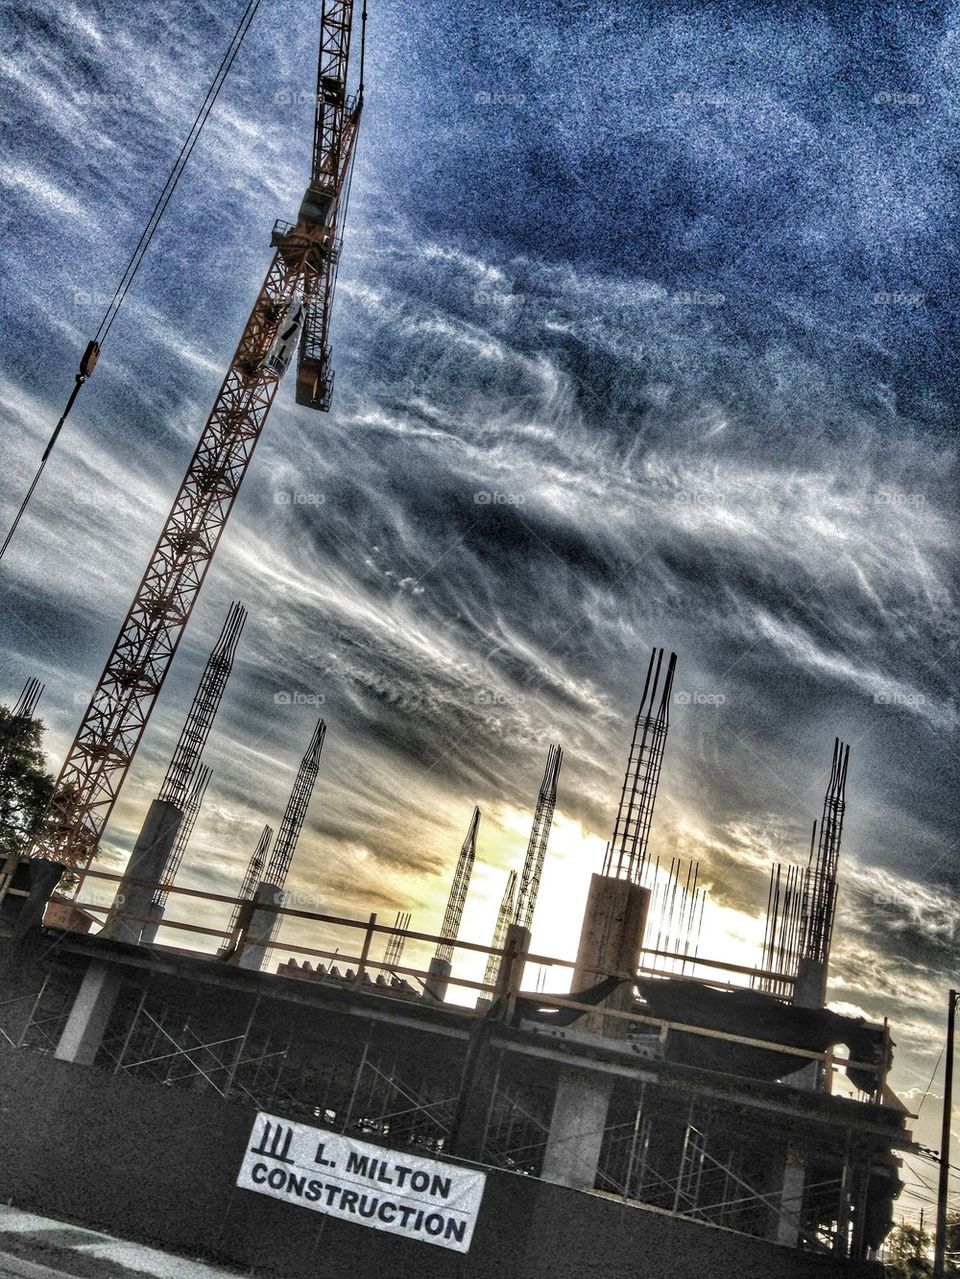 Construction site, Miami, FL